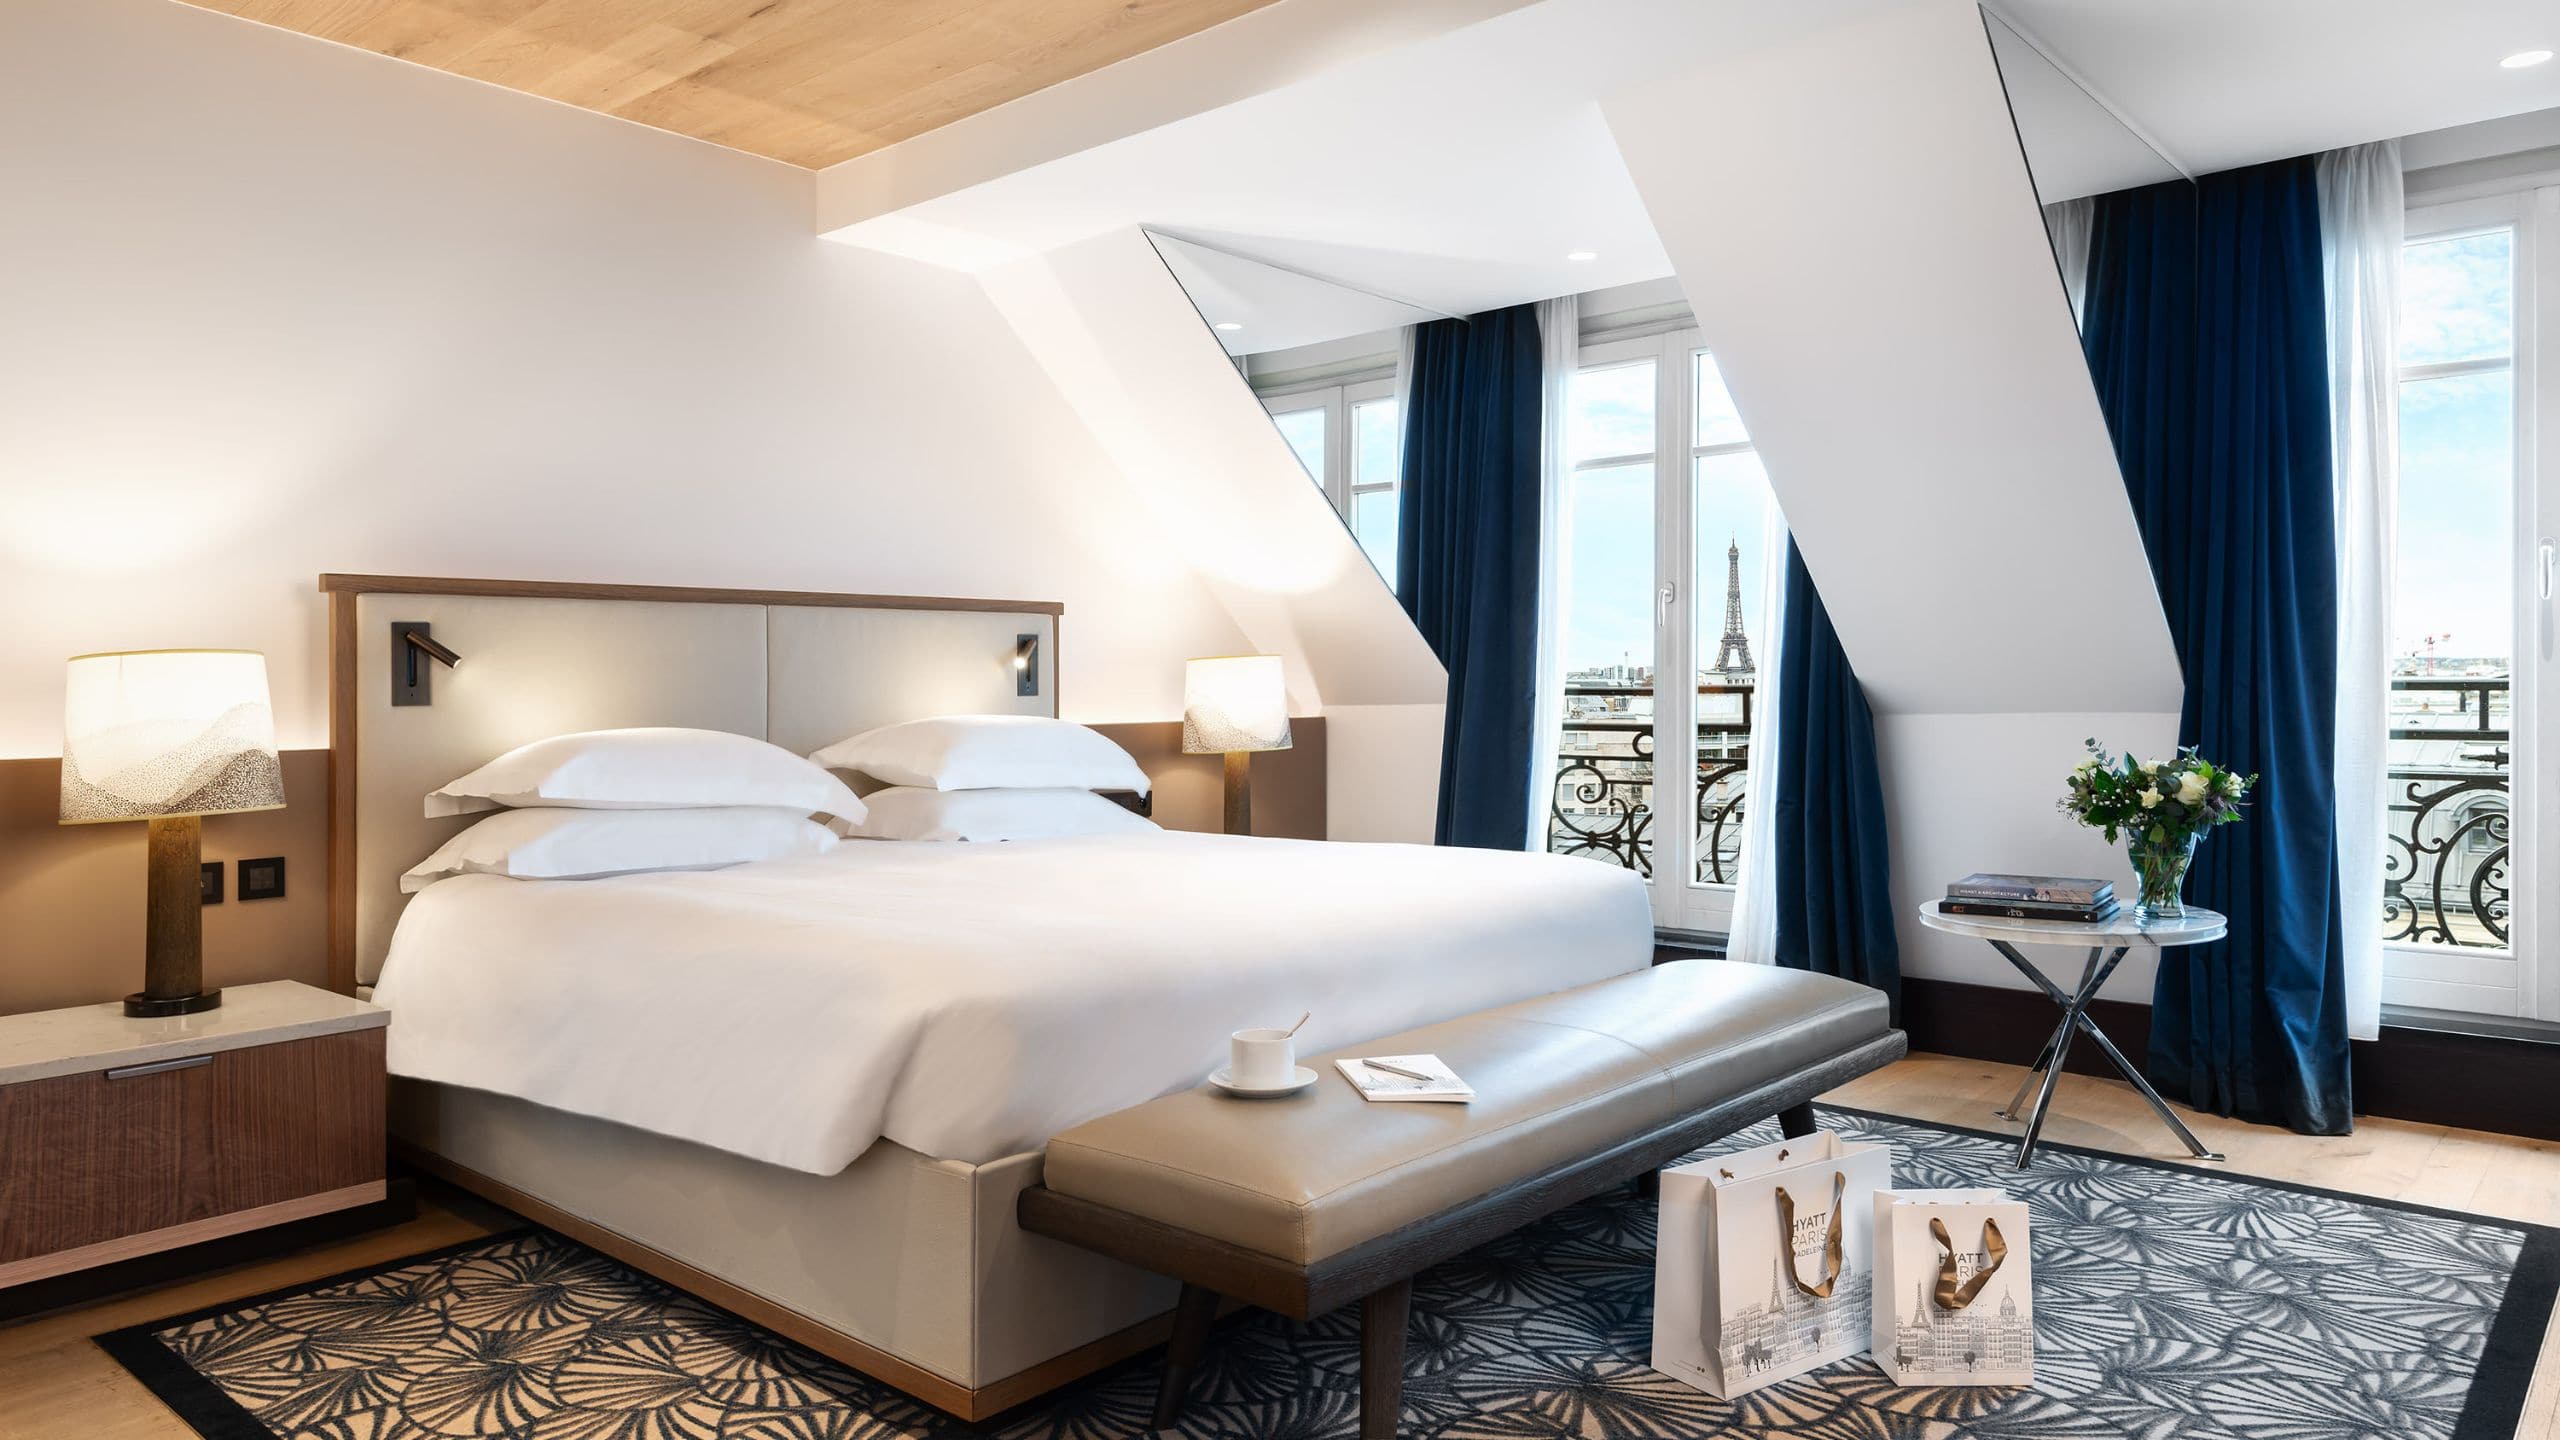 5 Star Hotel Rooms & Suites - Paris